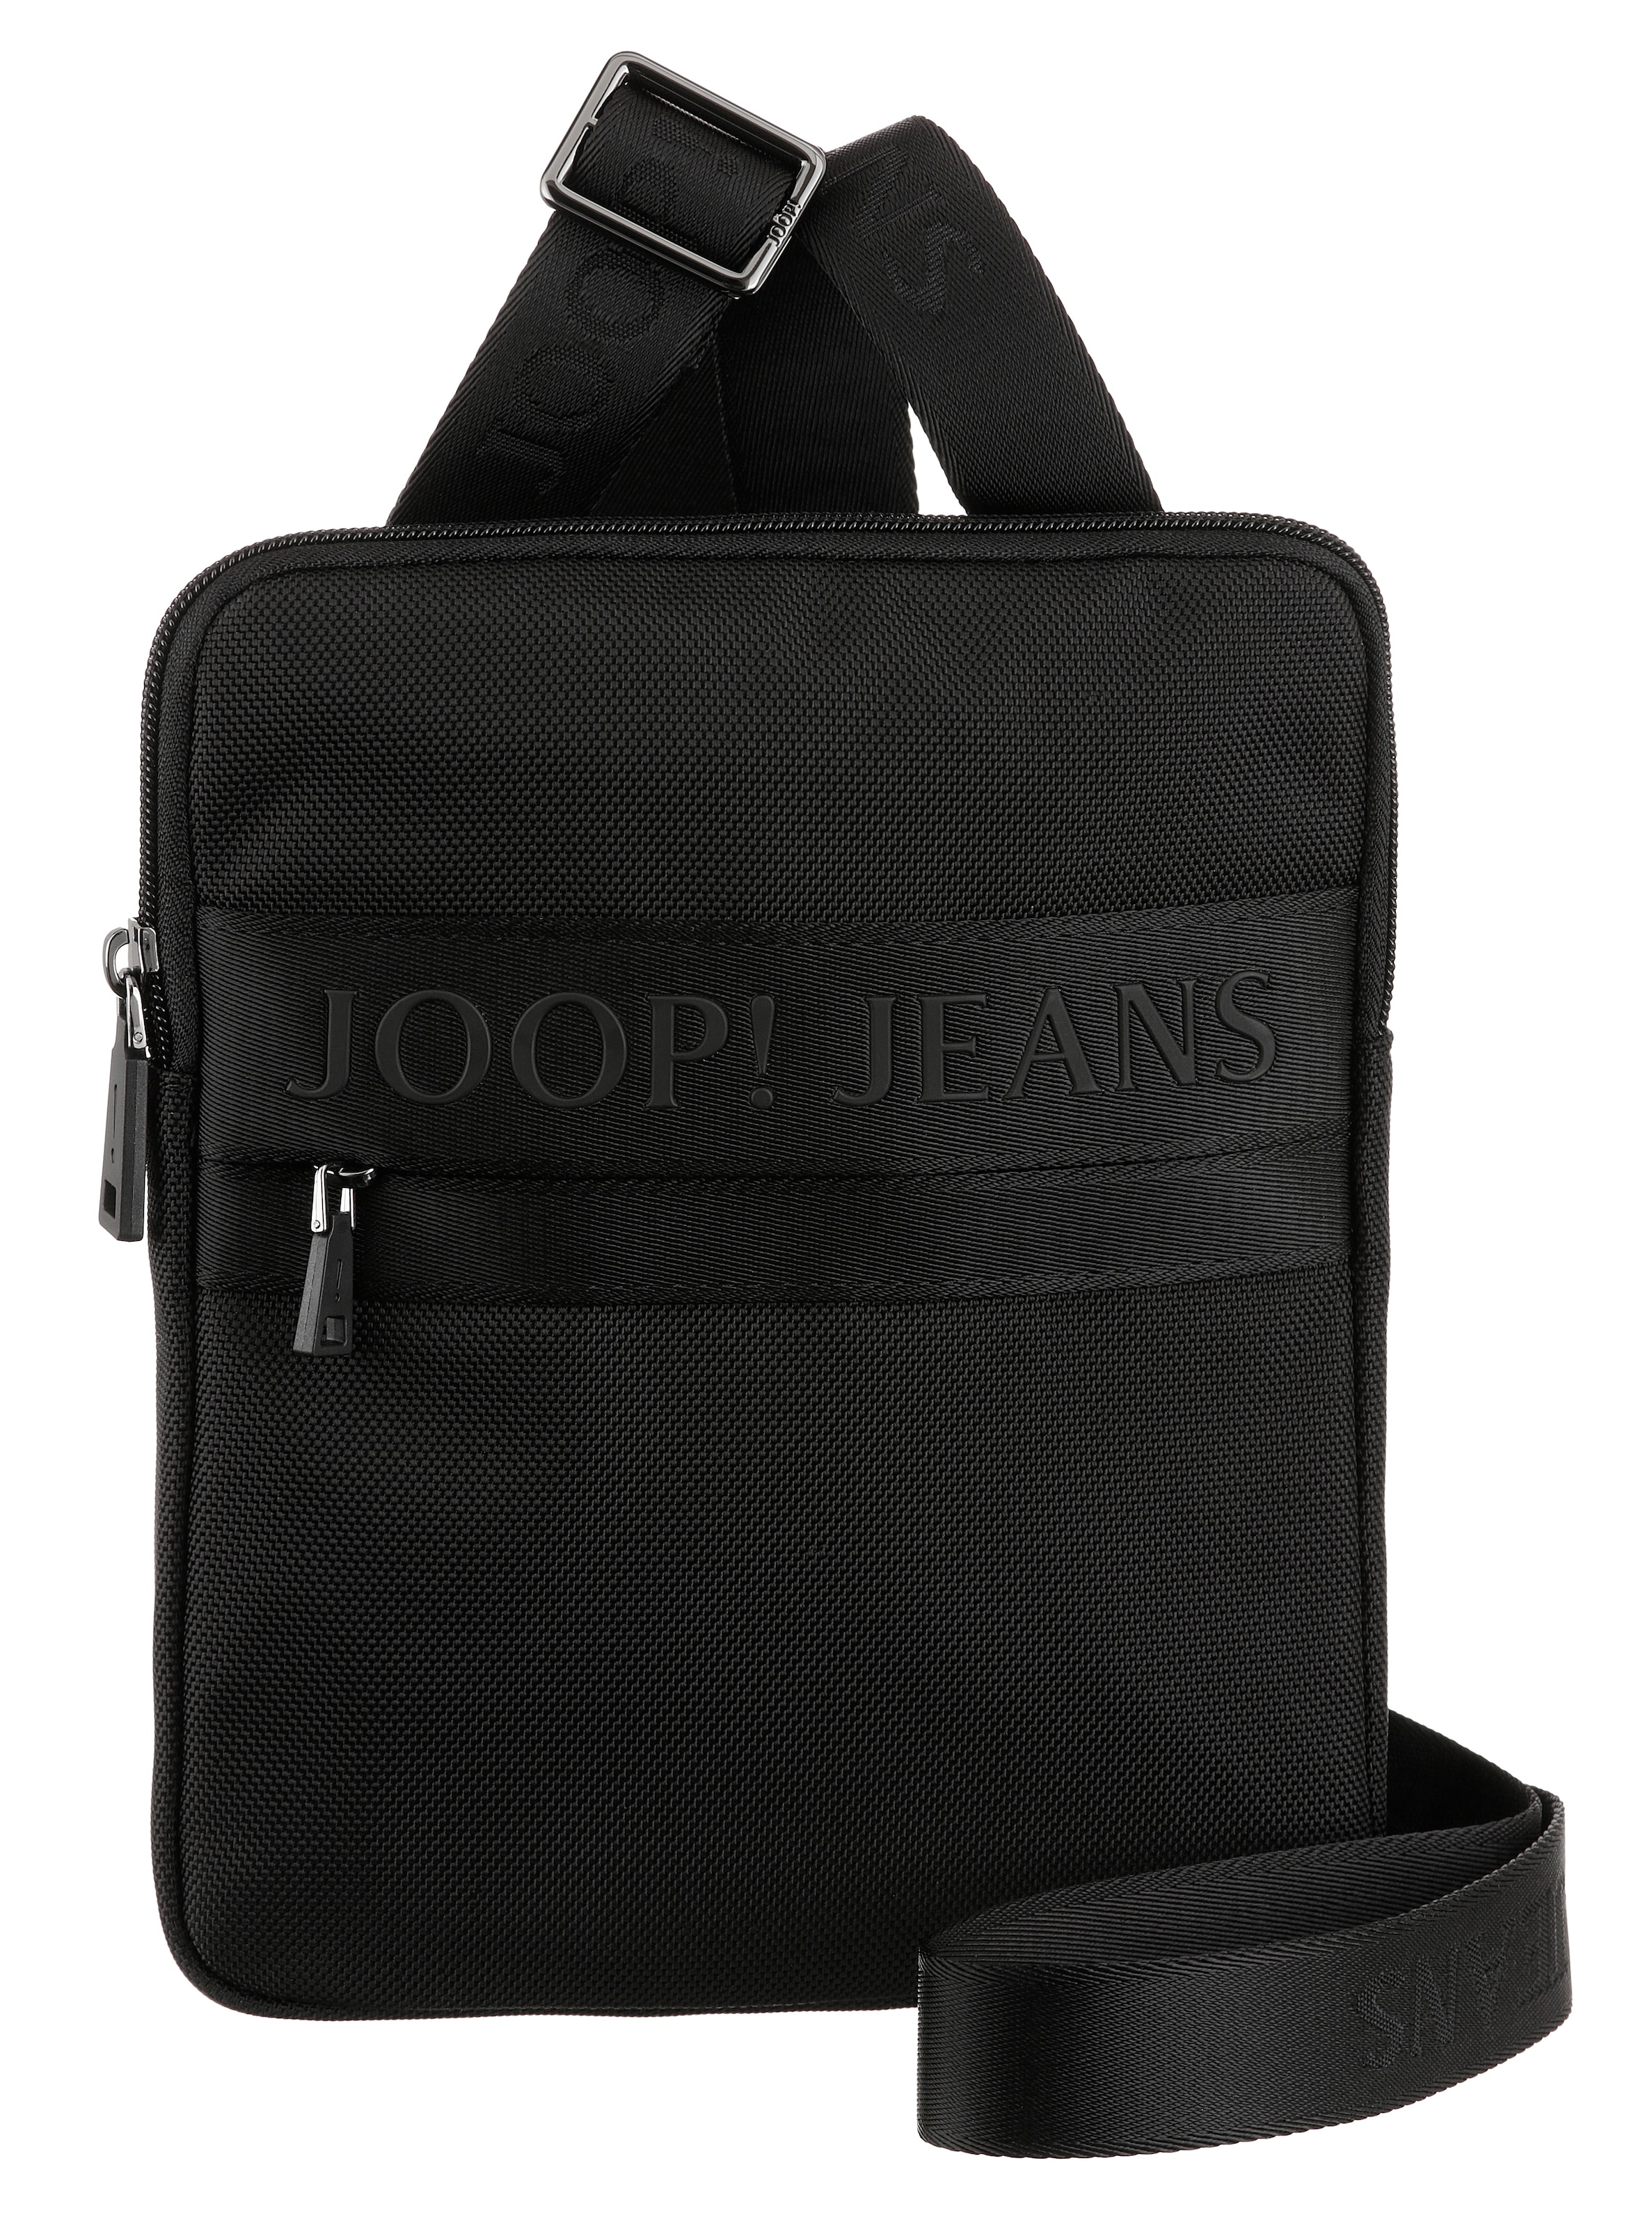 OTTO shoulderbag kaufen mit liam schöner »modica Joop Jeans Stickerei Umhängetasche bei xsvz«, Logo